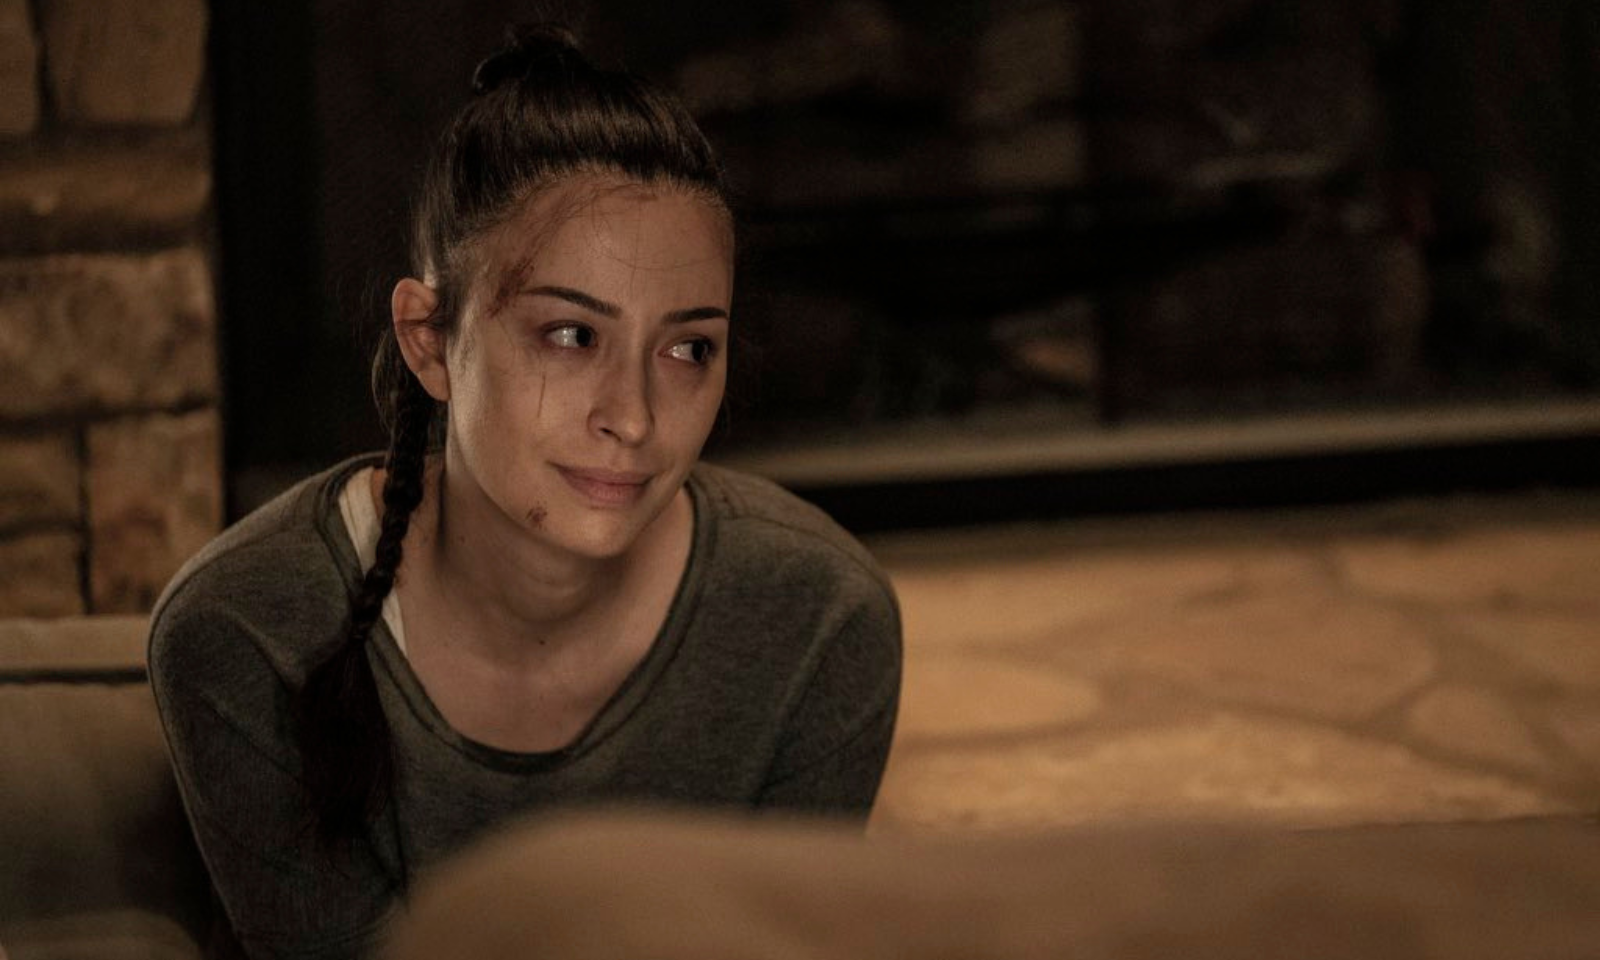 Rosita triste sentada no chão em cena do último episódio de The Walking Dead.